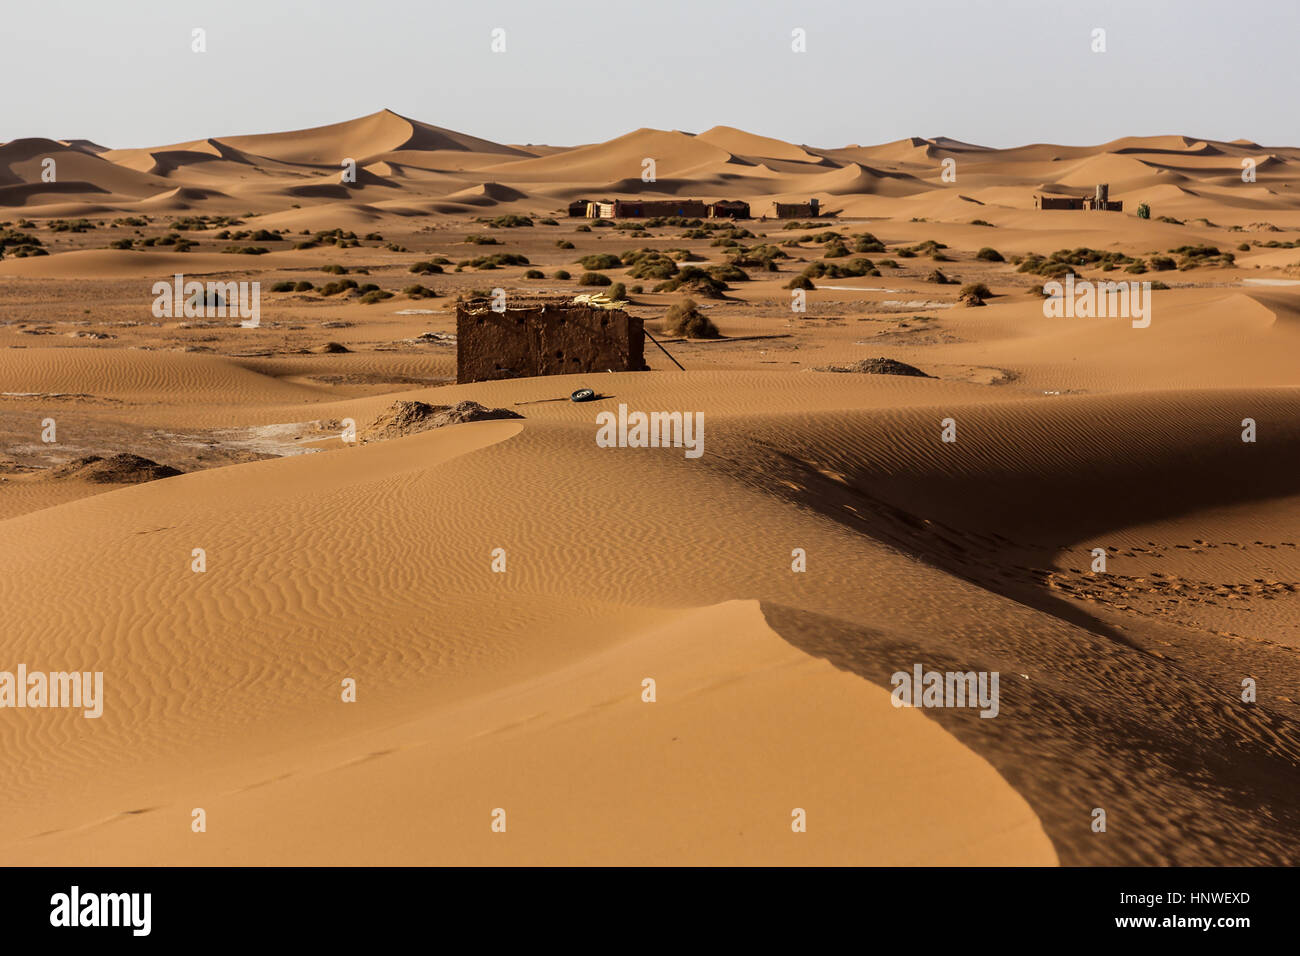 Touristischen Camp zwischen Dünen. Landschaft der marokkanischen Wüste. Sahara an der Grenze zu Algerien. Stockfoto